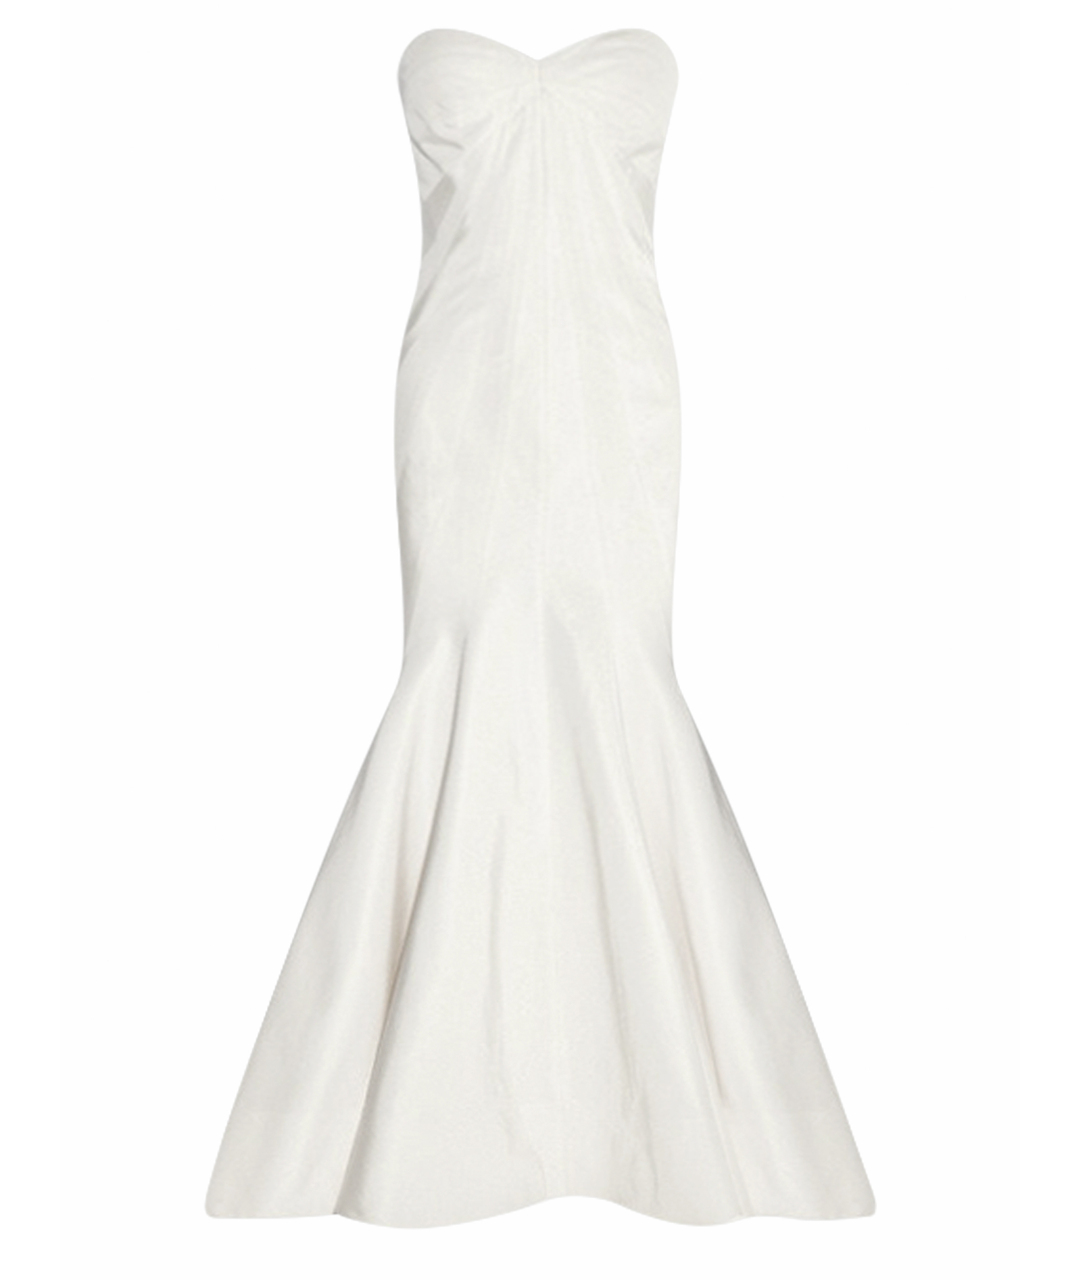 ZAC POSEN Белое шелковое свадебное платье, фото 1